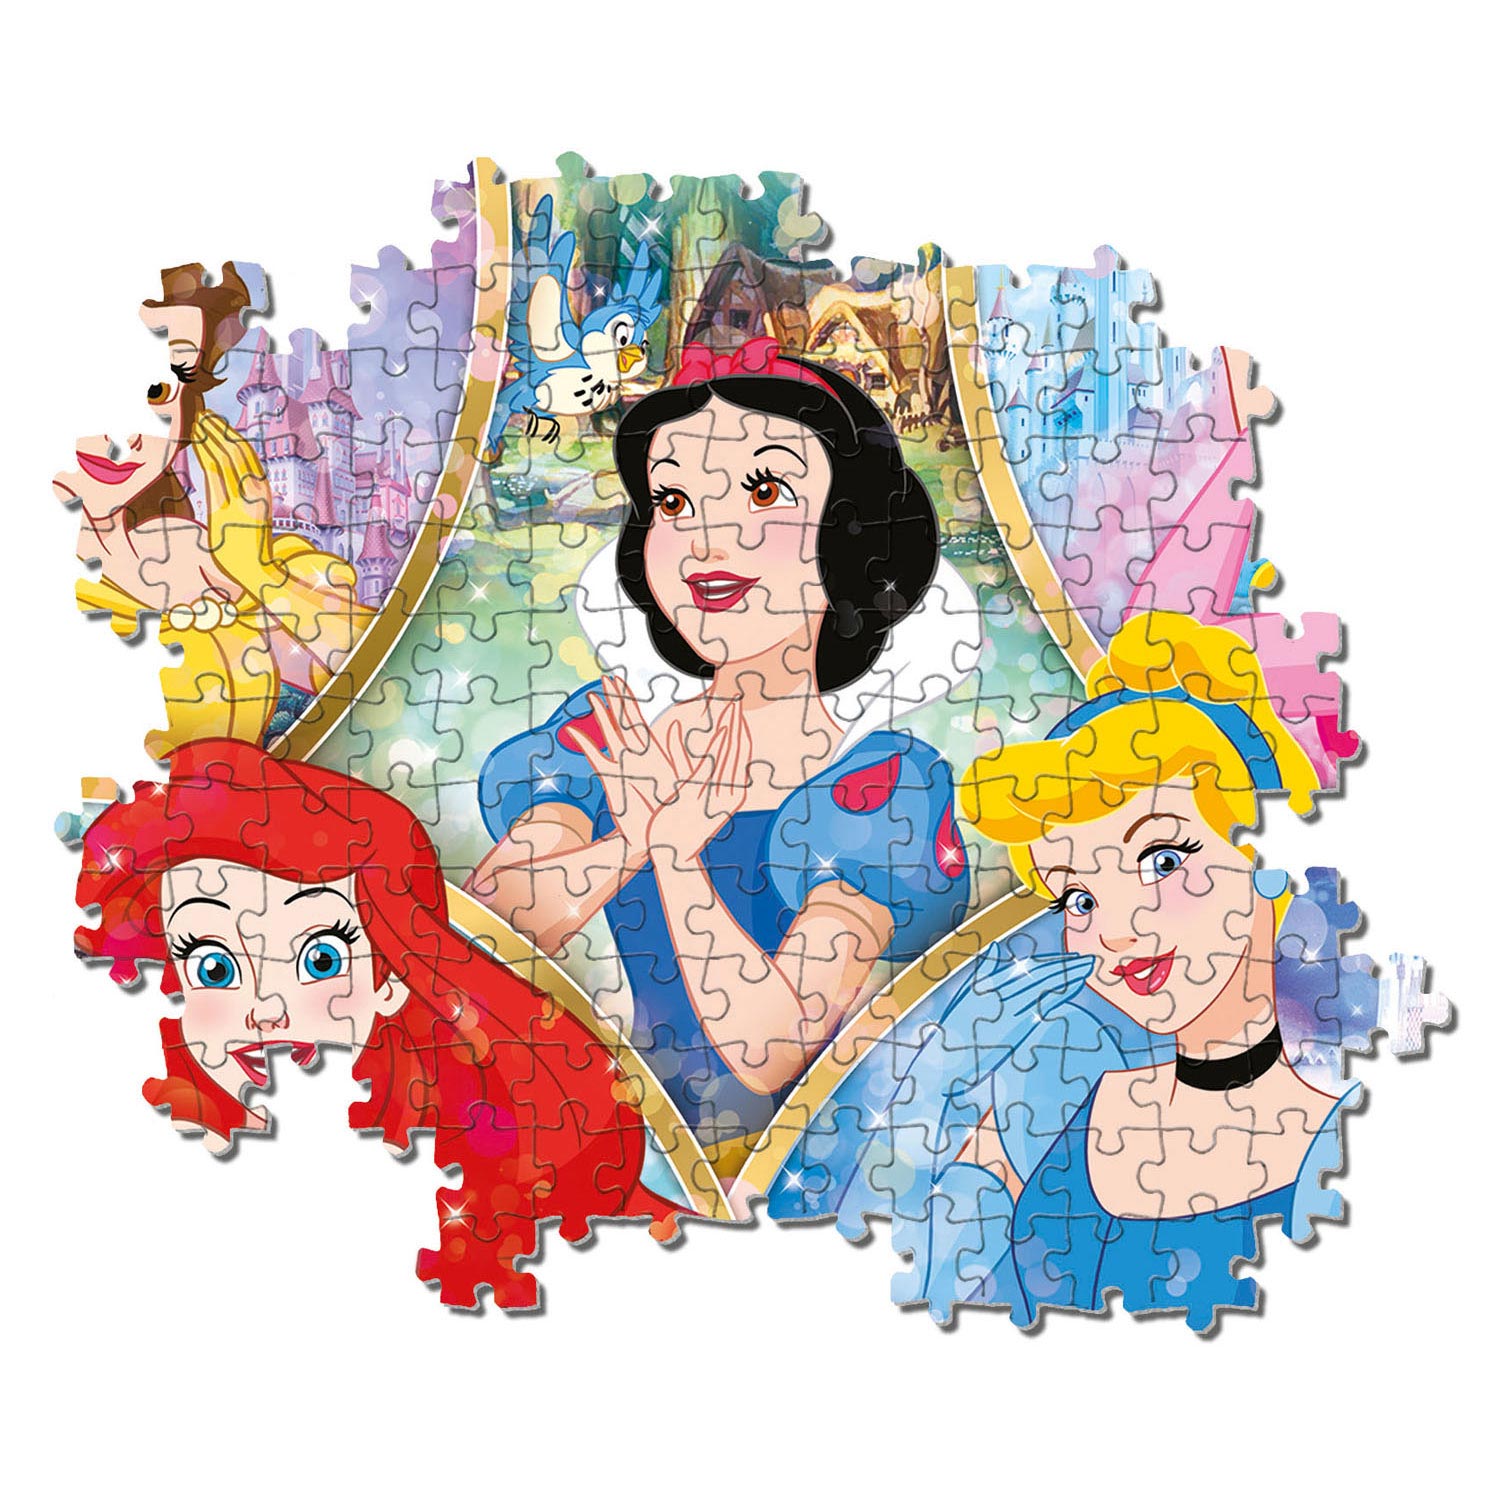 Clementoni Puzzle Princesse Disney, 180e.